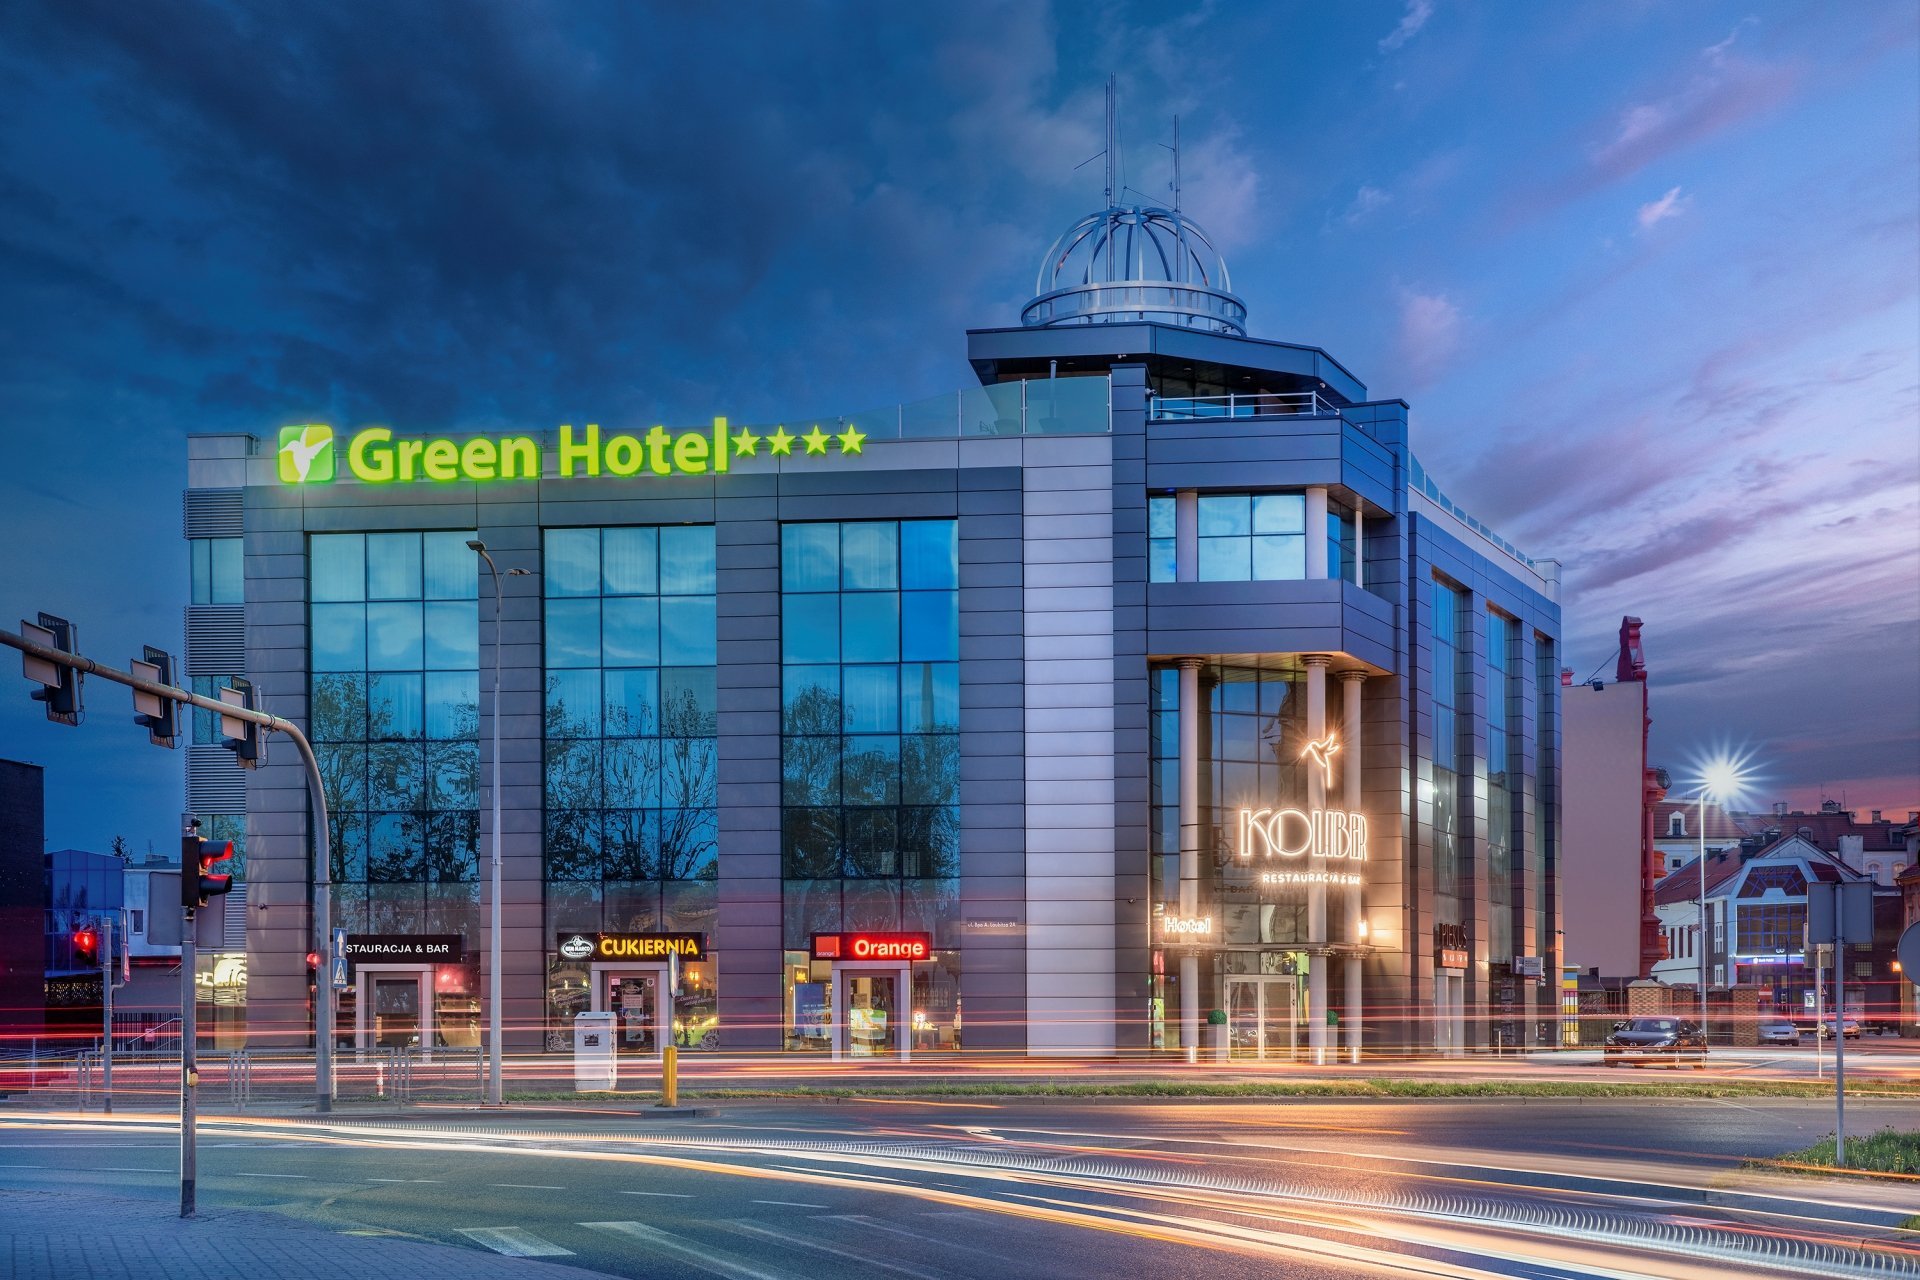 GREEN HOTEL UND RESTAURANT COLIBER IN INOWRAZLAW 2020